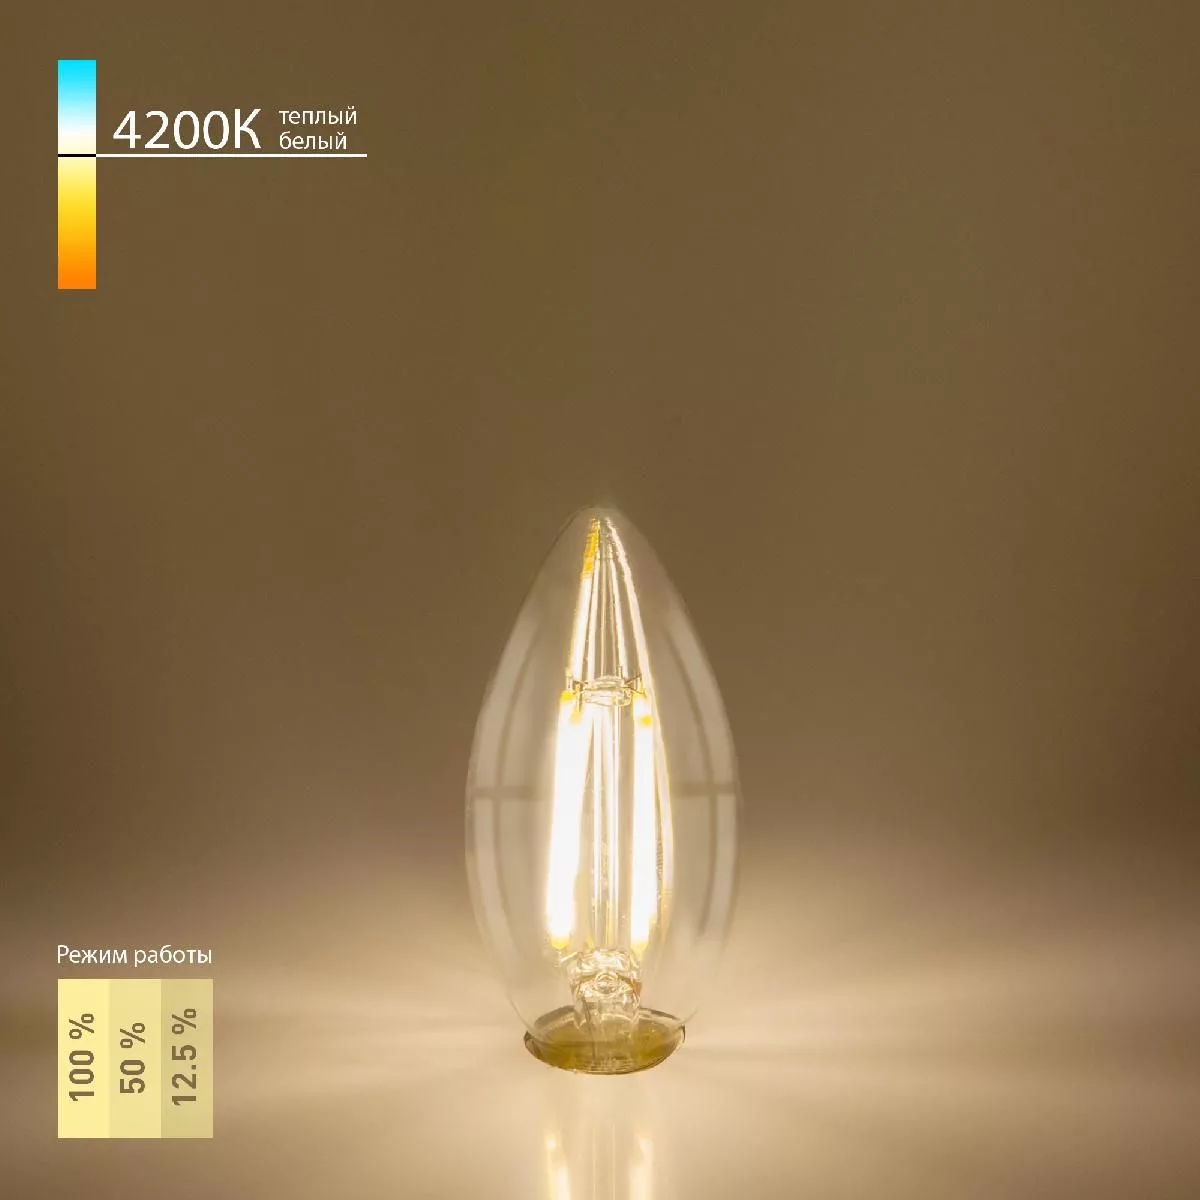 Филаментная лампа Свеча" Dimmable 5 Вт 4200K E14 Elektrostandard" BL134